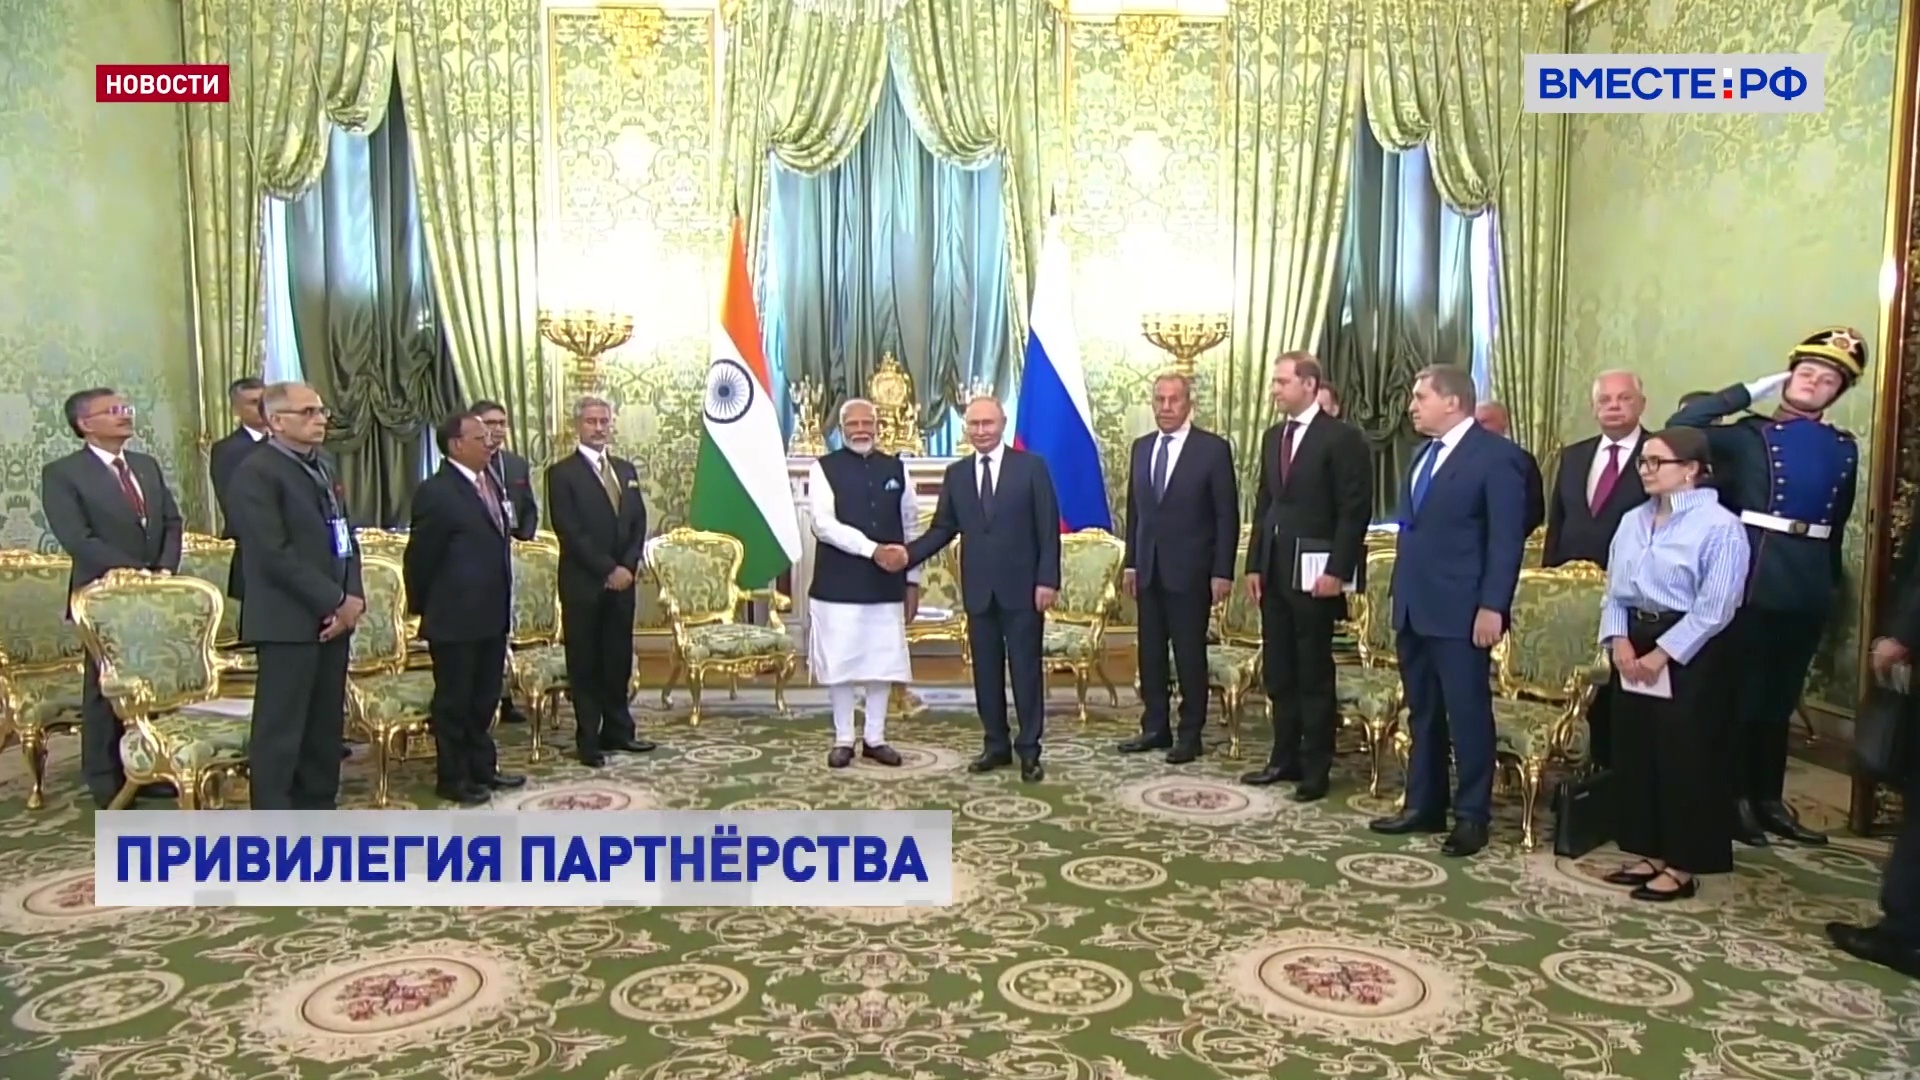 Стратегическое партнерство: визит премьер-министра Индии Моди в Москву